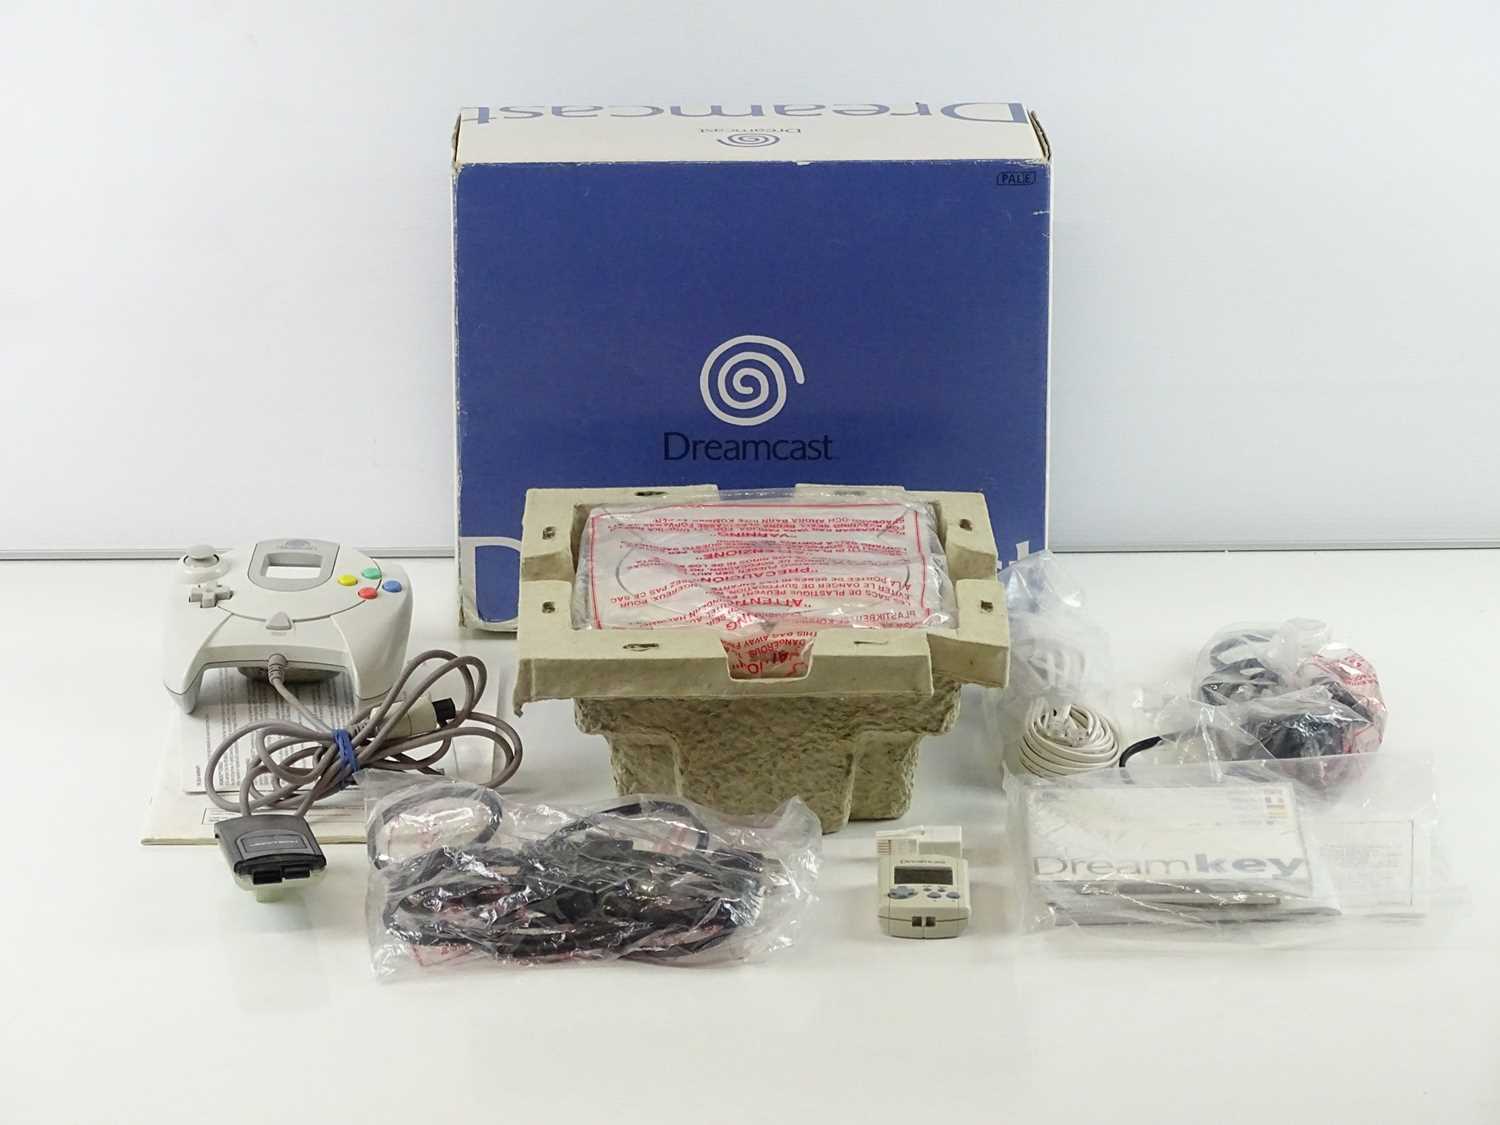 Lot 135 - Sega Dreamcast console - released in 1998 